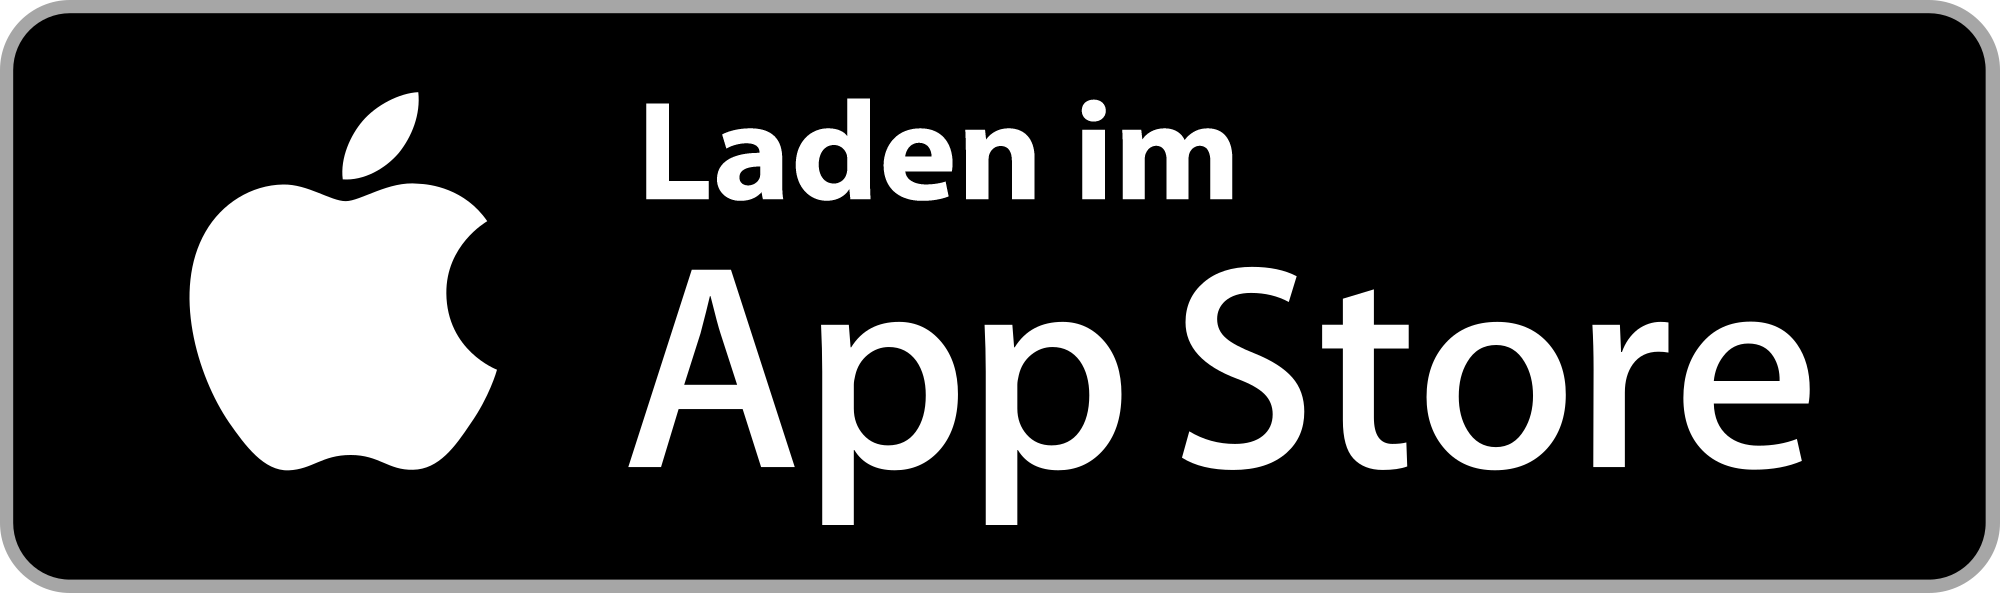 Button „Laden im Apple App Store“